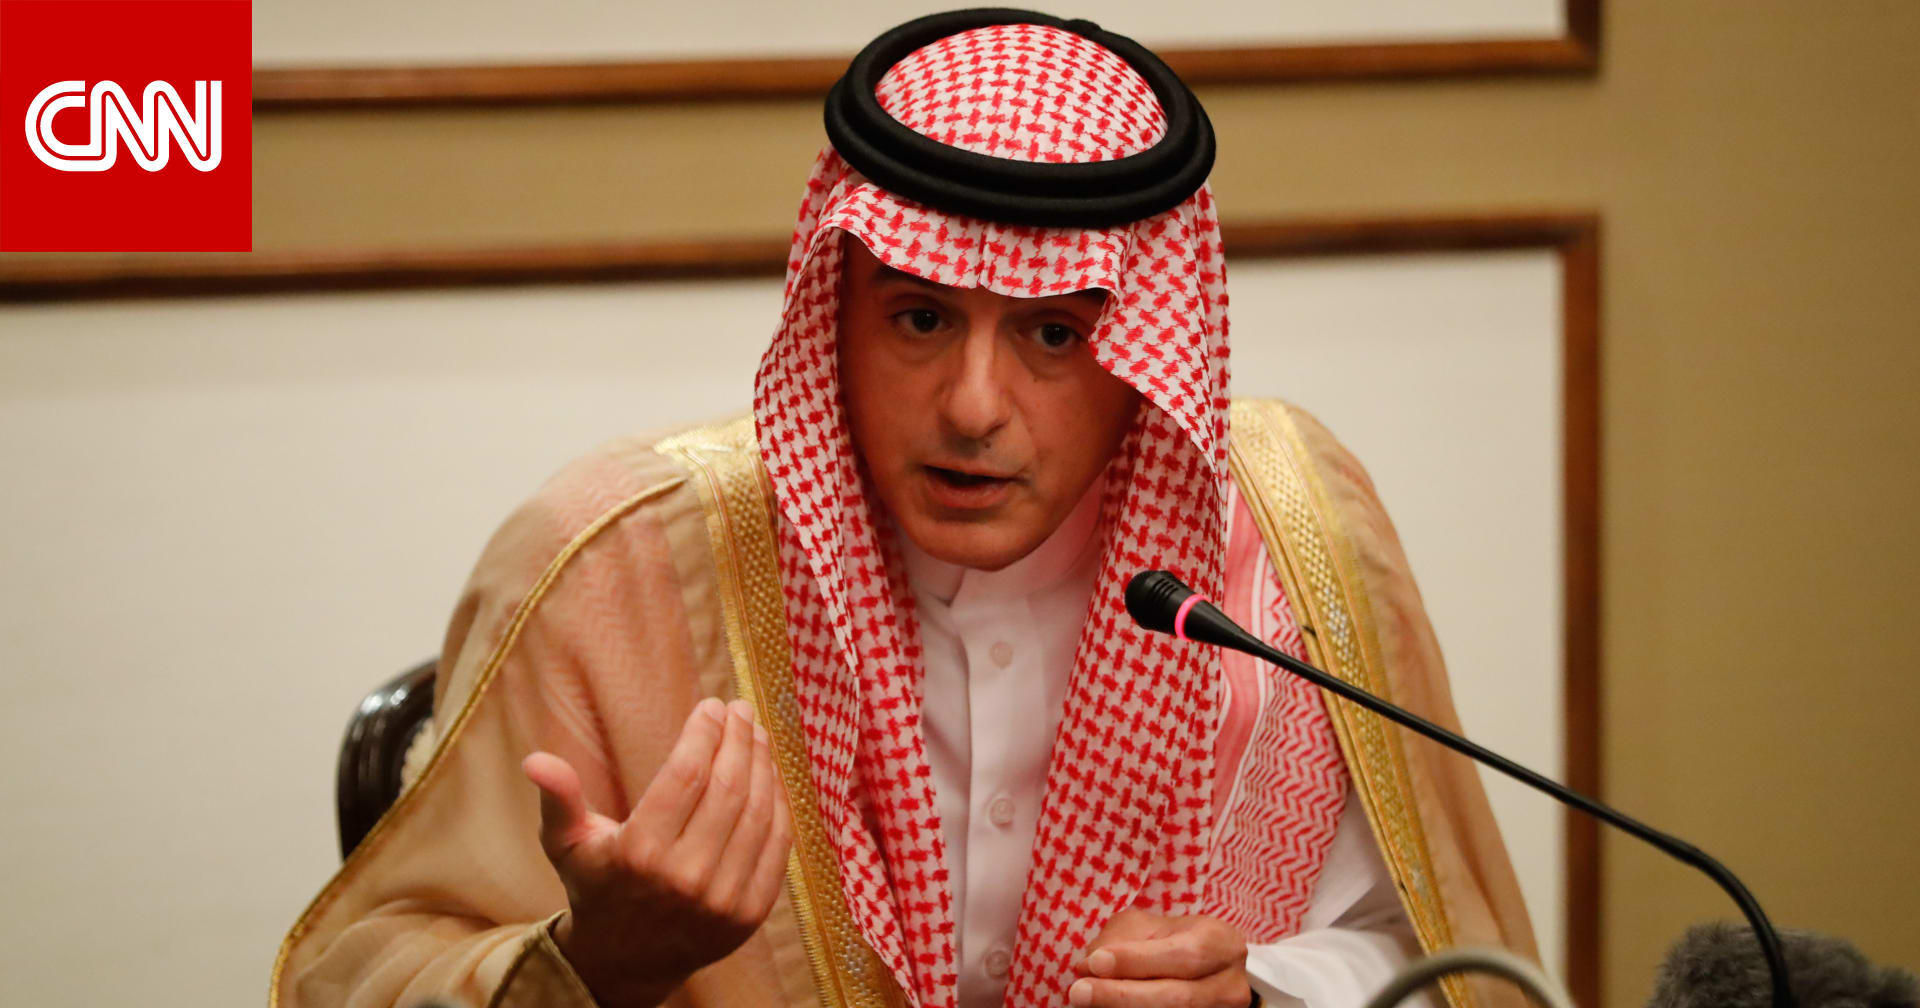 الجبير: السعودية سترد على هجوم أرامكو بالخيار المناسب بعد انتهاء التحقيقات - CNN Arabic